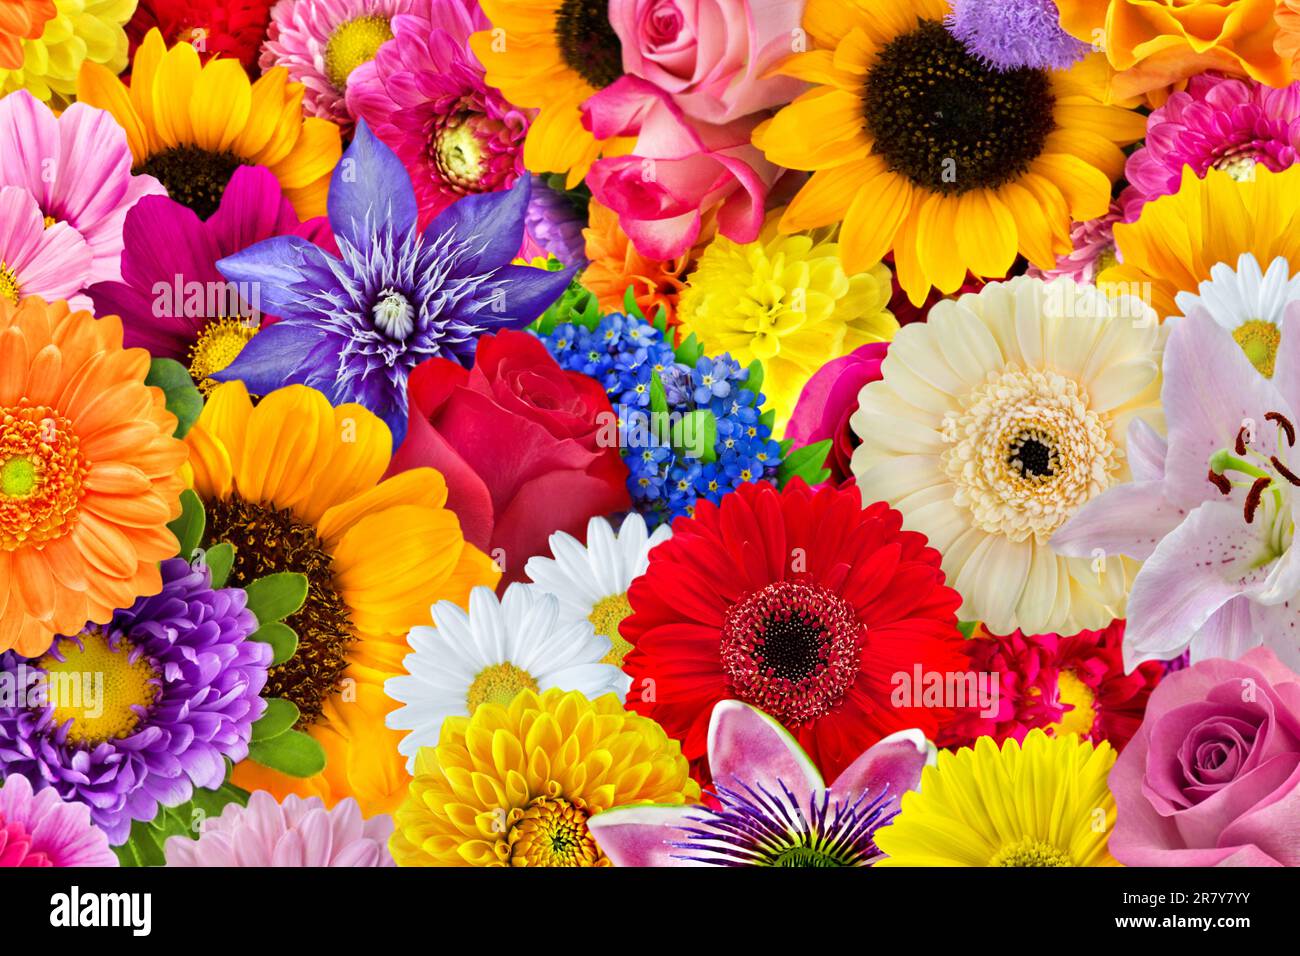 Bunte Auswahl an Blumen im Sommer aus dem Garten mit Rosen, Gerbera, Dahlien, Margeriten, Sonnenblumen, Lilien, Clematis und Anemonen Stock Photo